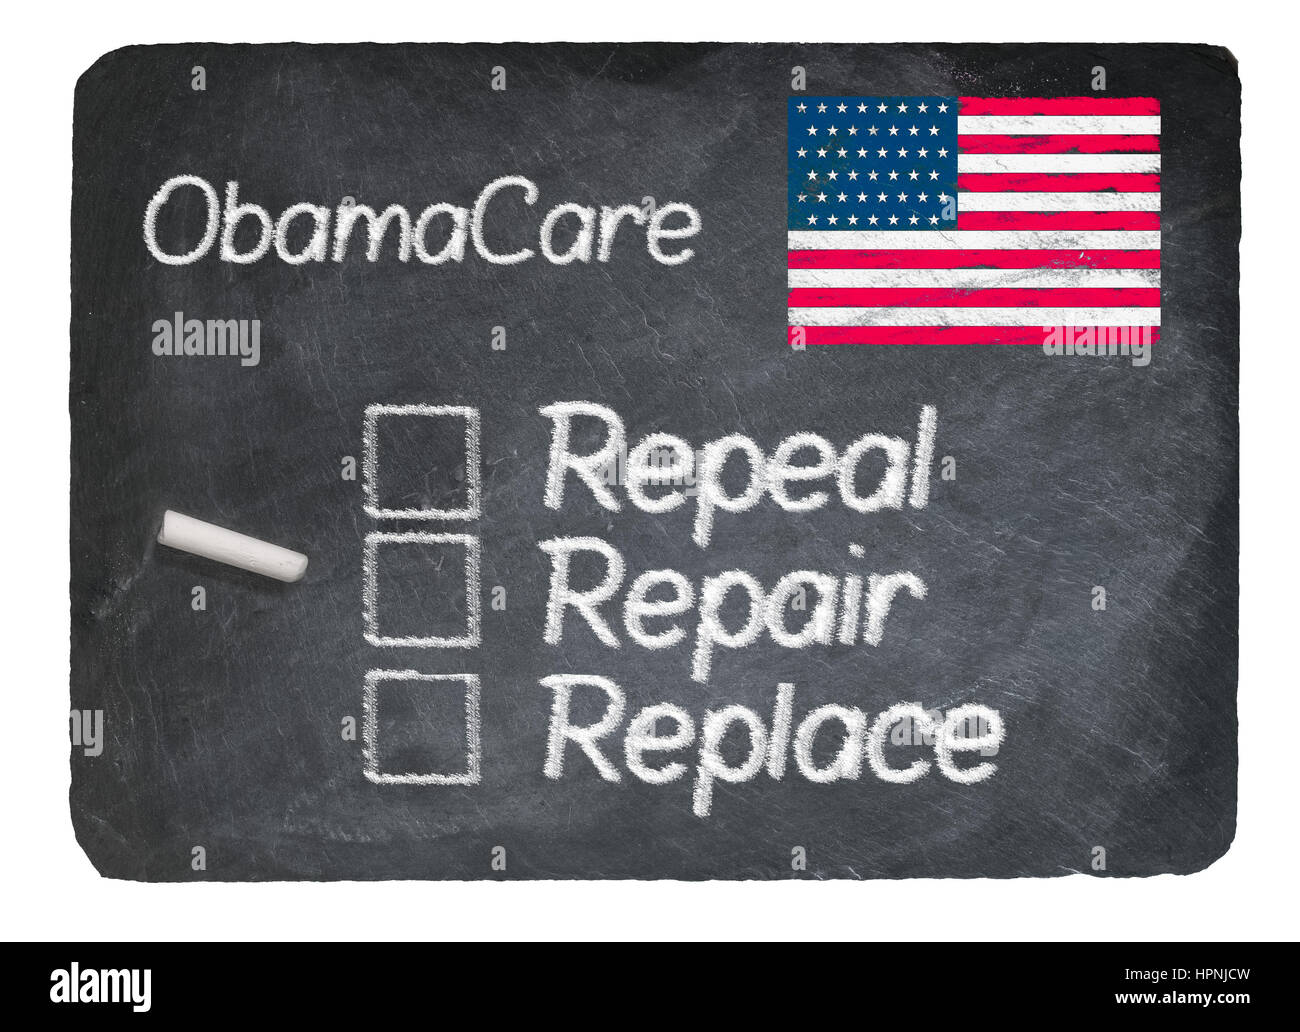 Plan de santé Obamacare choix de réparer écrit dans la craie sur un tableau noir en ardoise naturelle crayeux contre isolé sur fond blanc Banque D'Images